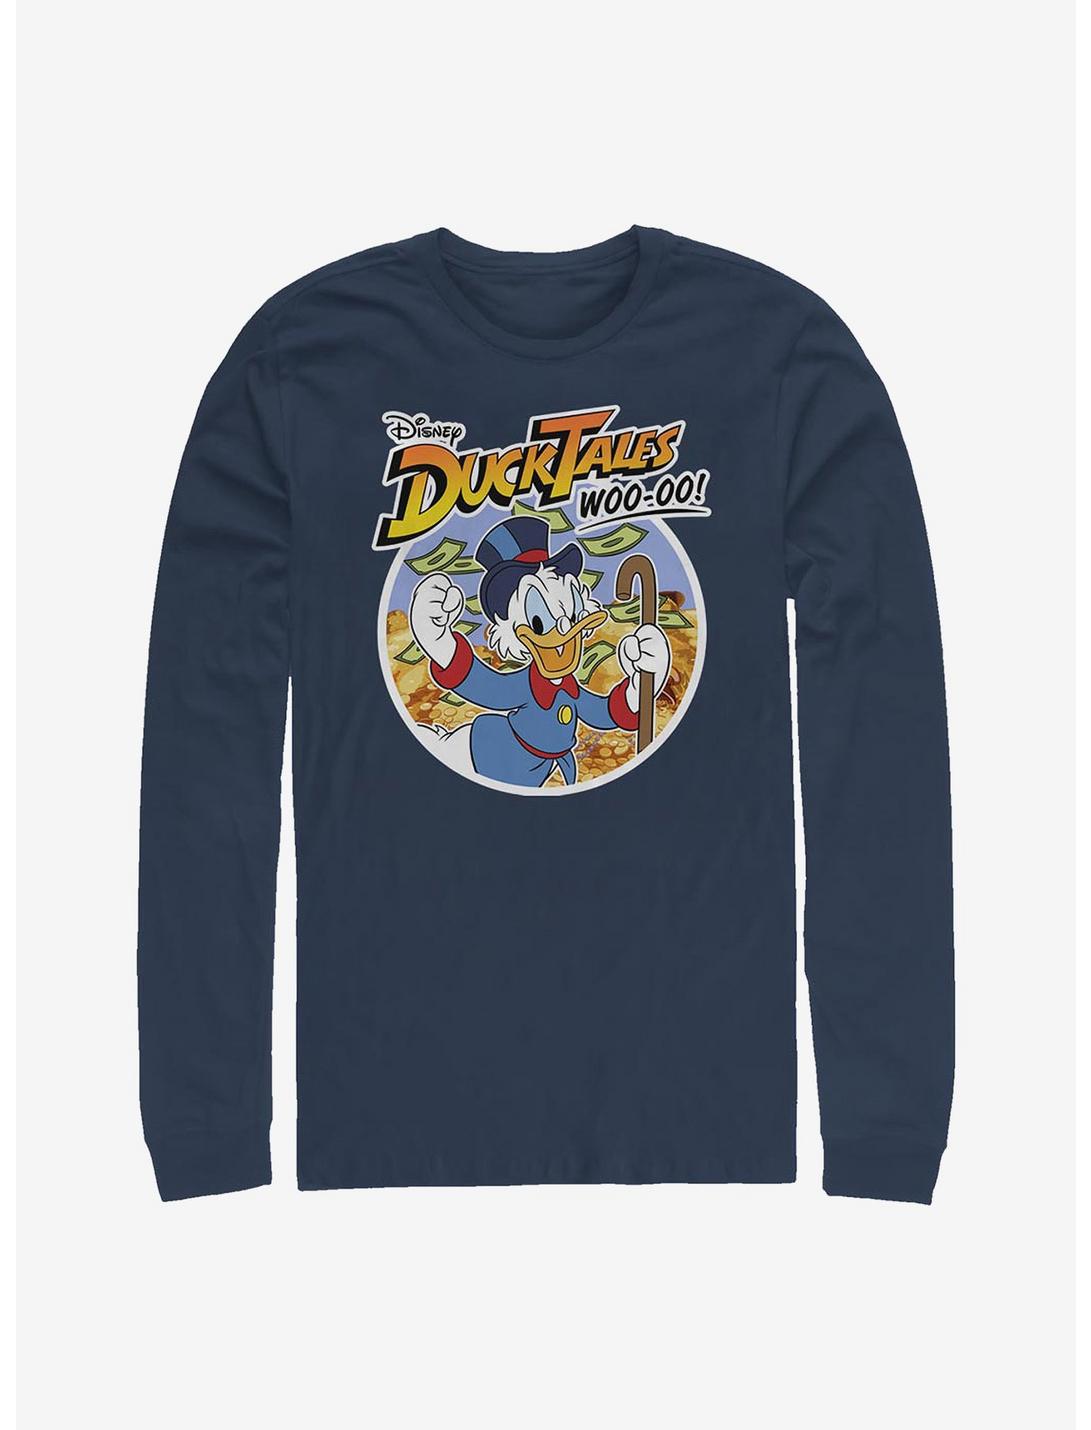 Disney Ducktales Scrooge McDuck Long-Sleeve T-Shirt, NAVY, hi-res